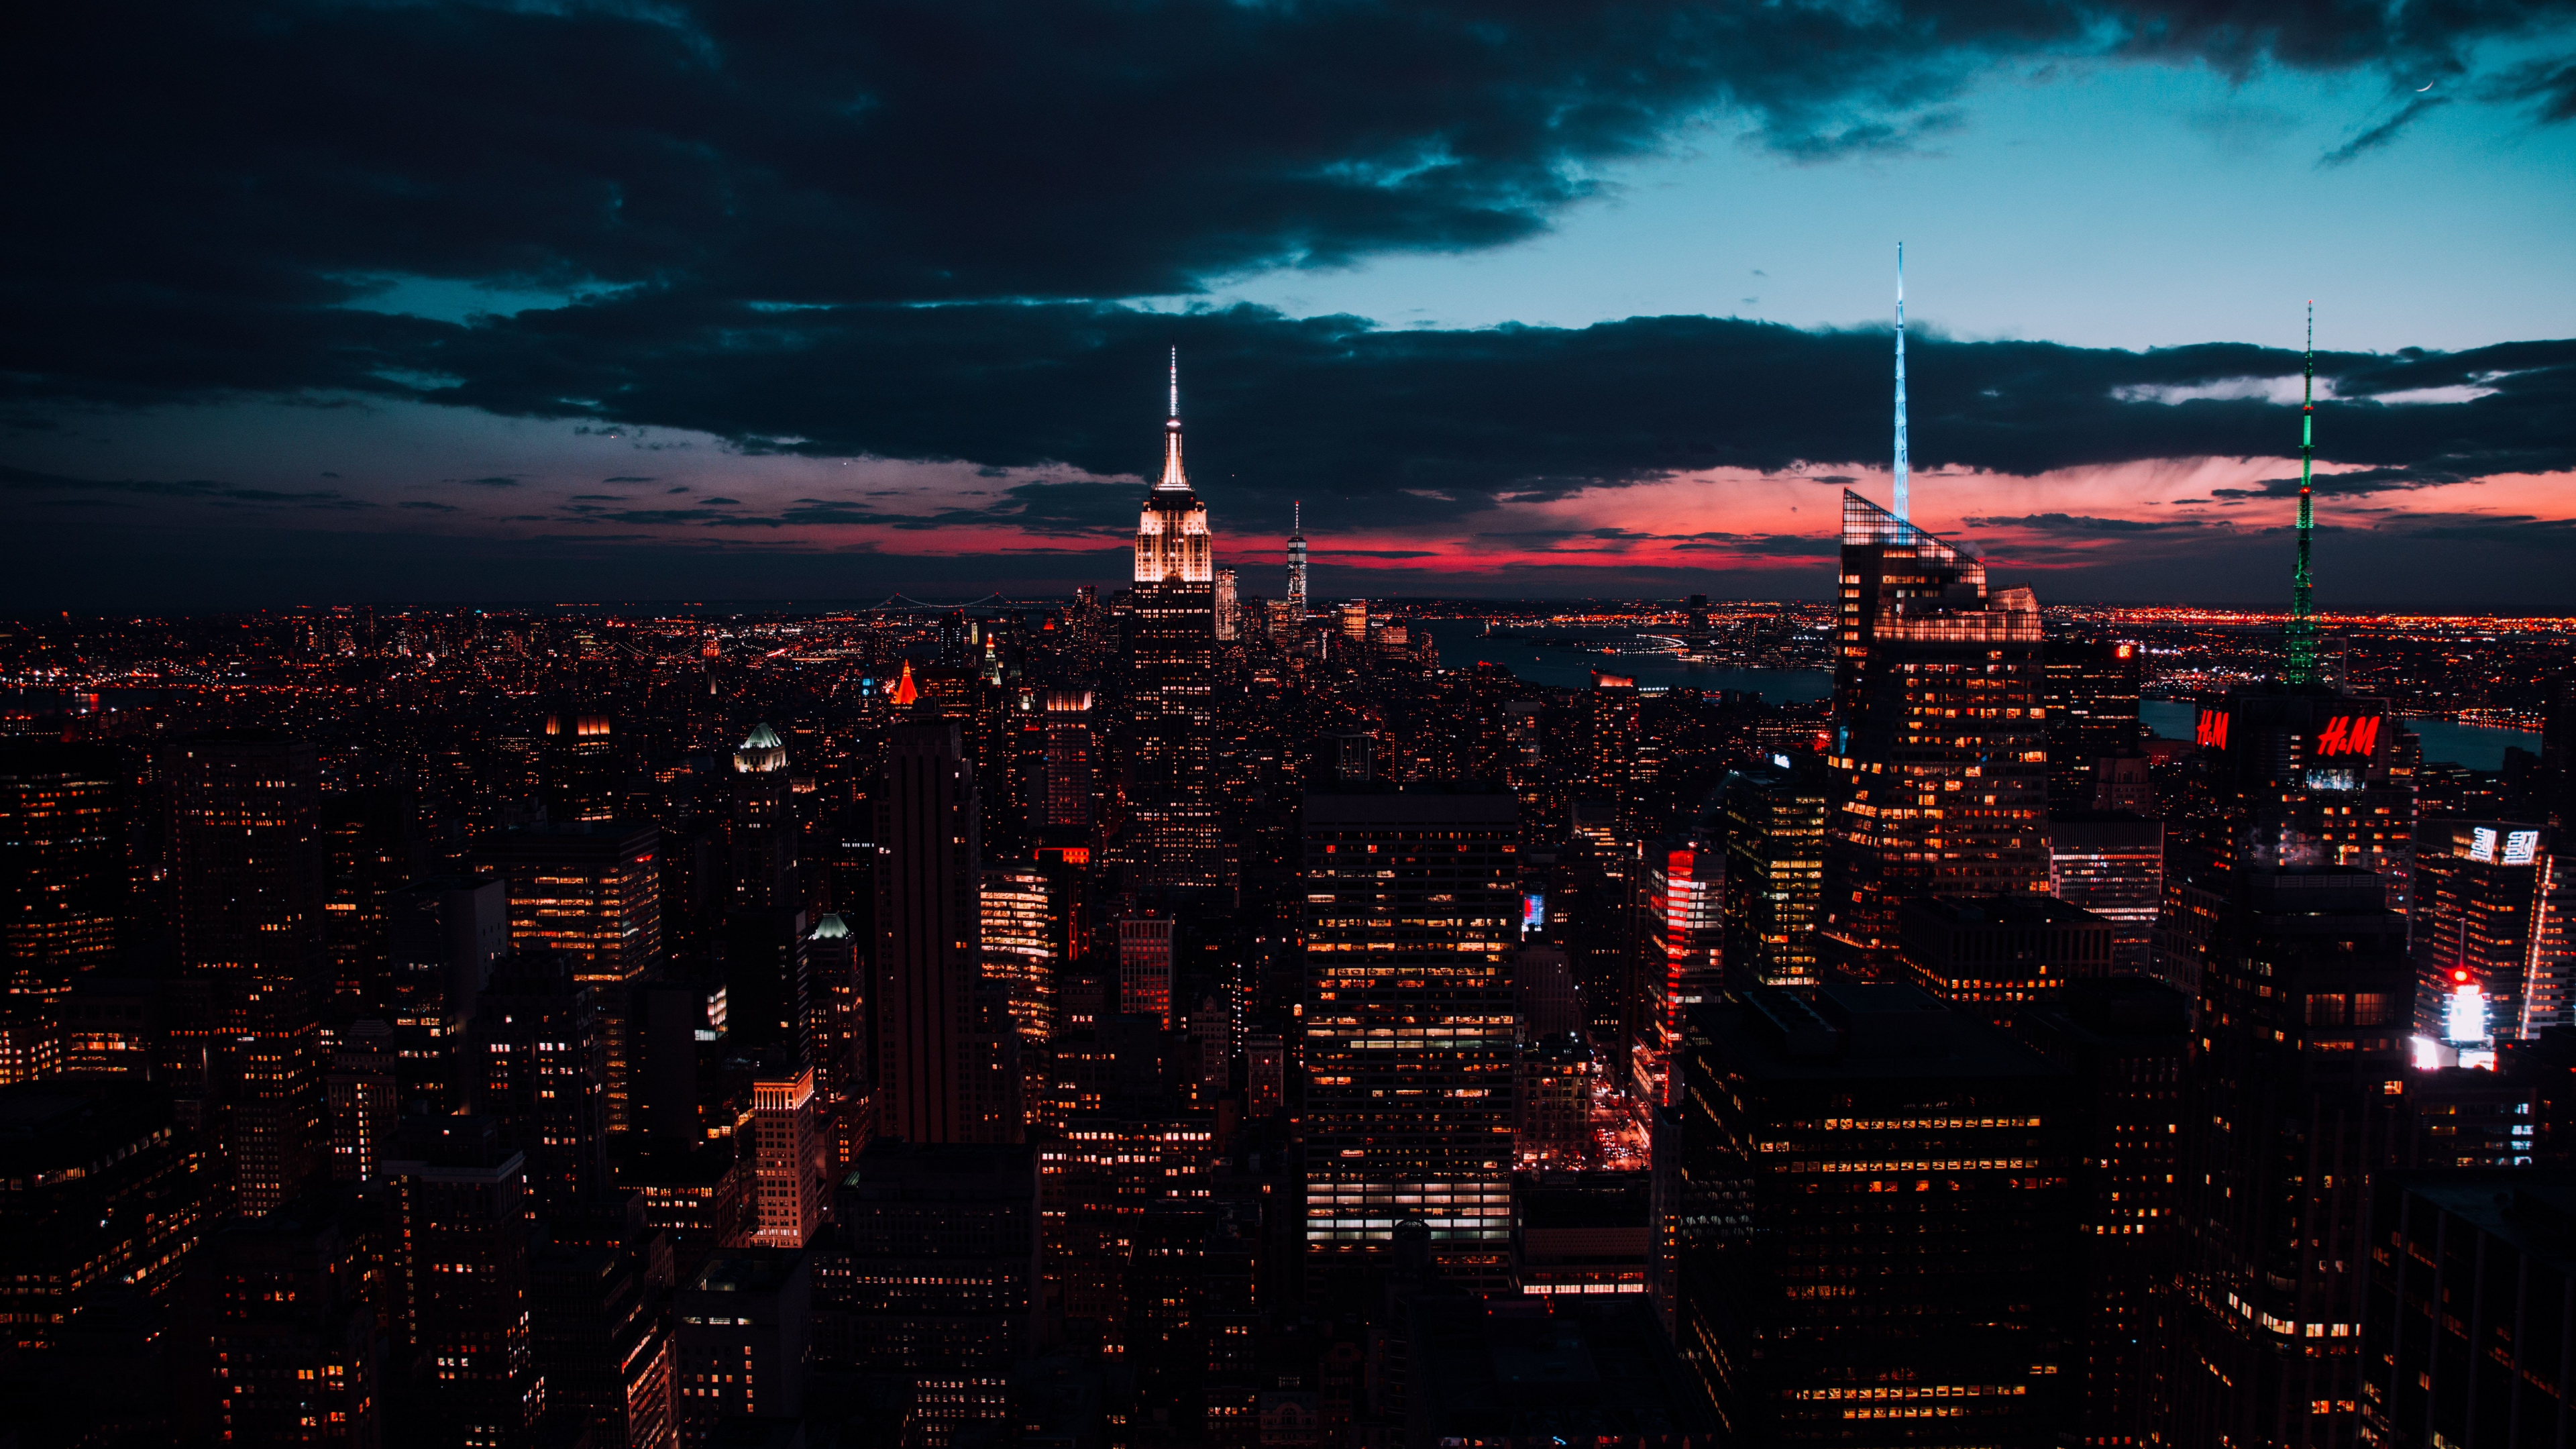 Nếu bạn đang tìm kiếm một hình nền hoàn toàn mới cho máy tính của mình, hãy tải hình nền 3840x2160 New York, các tòa nhà, đêm, cảnh đô thị. Bạn sẽ được ngắm nhìn tầm nhìn đón chào buổi tối đầy màu sắc và thành phố sáng lên rực rỡ.